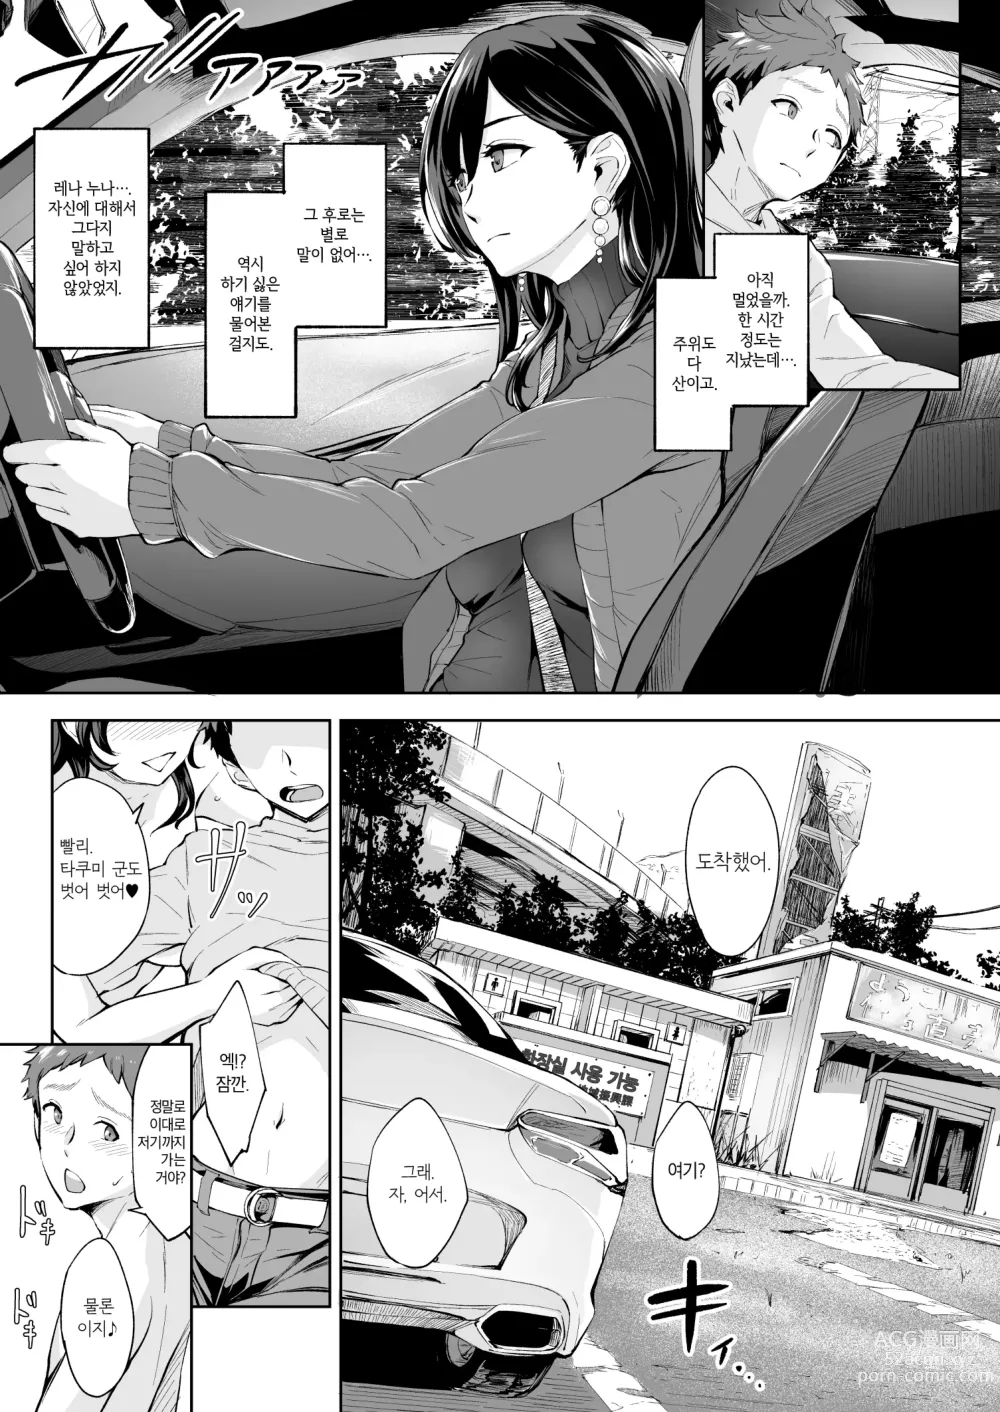 Page 22 of doujinshi 나타난 치녀는 연하킬러인 스카토로 변태였습니다 2